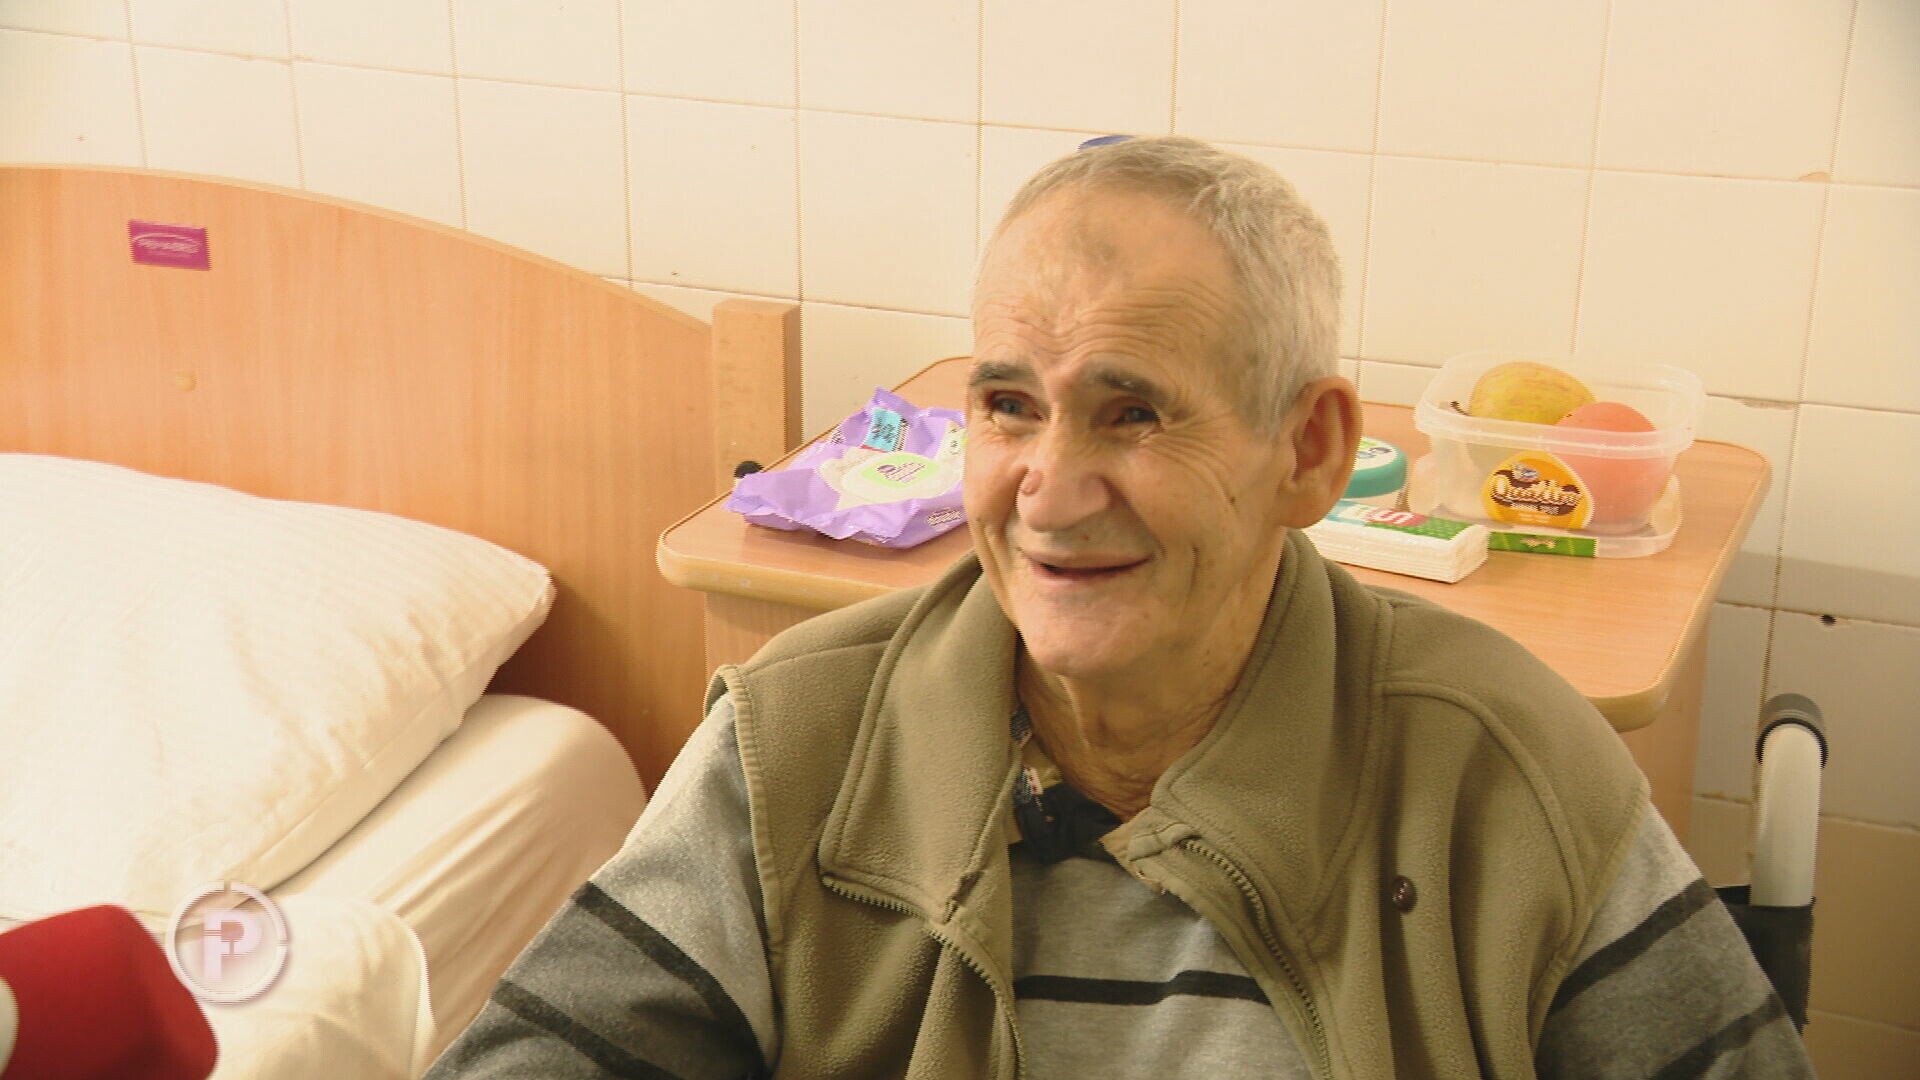 Nakon priče u Provjerenom Mijat je pronašao novi dom: Osmijeh na njegovu licu govori više od stotinu riječi